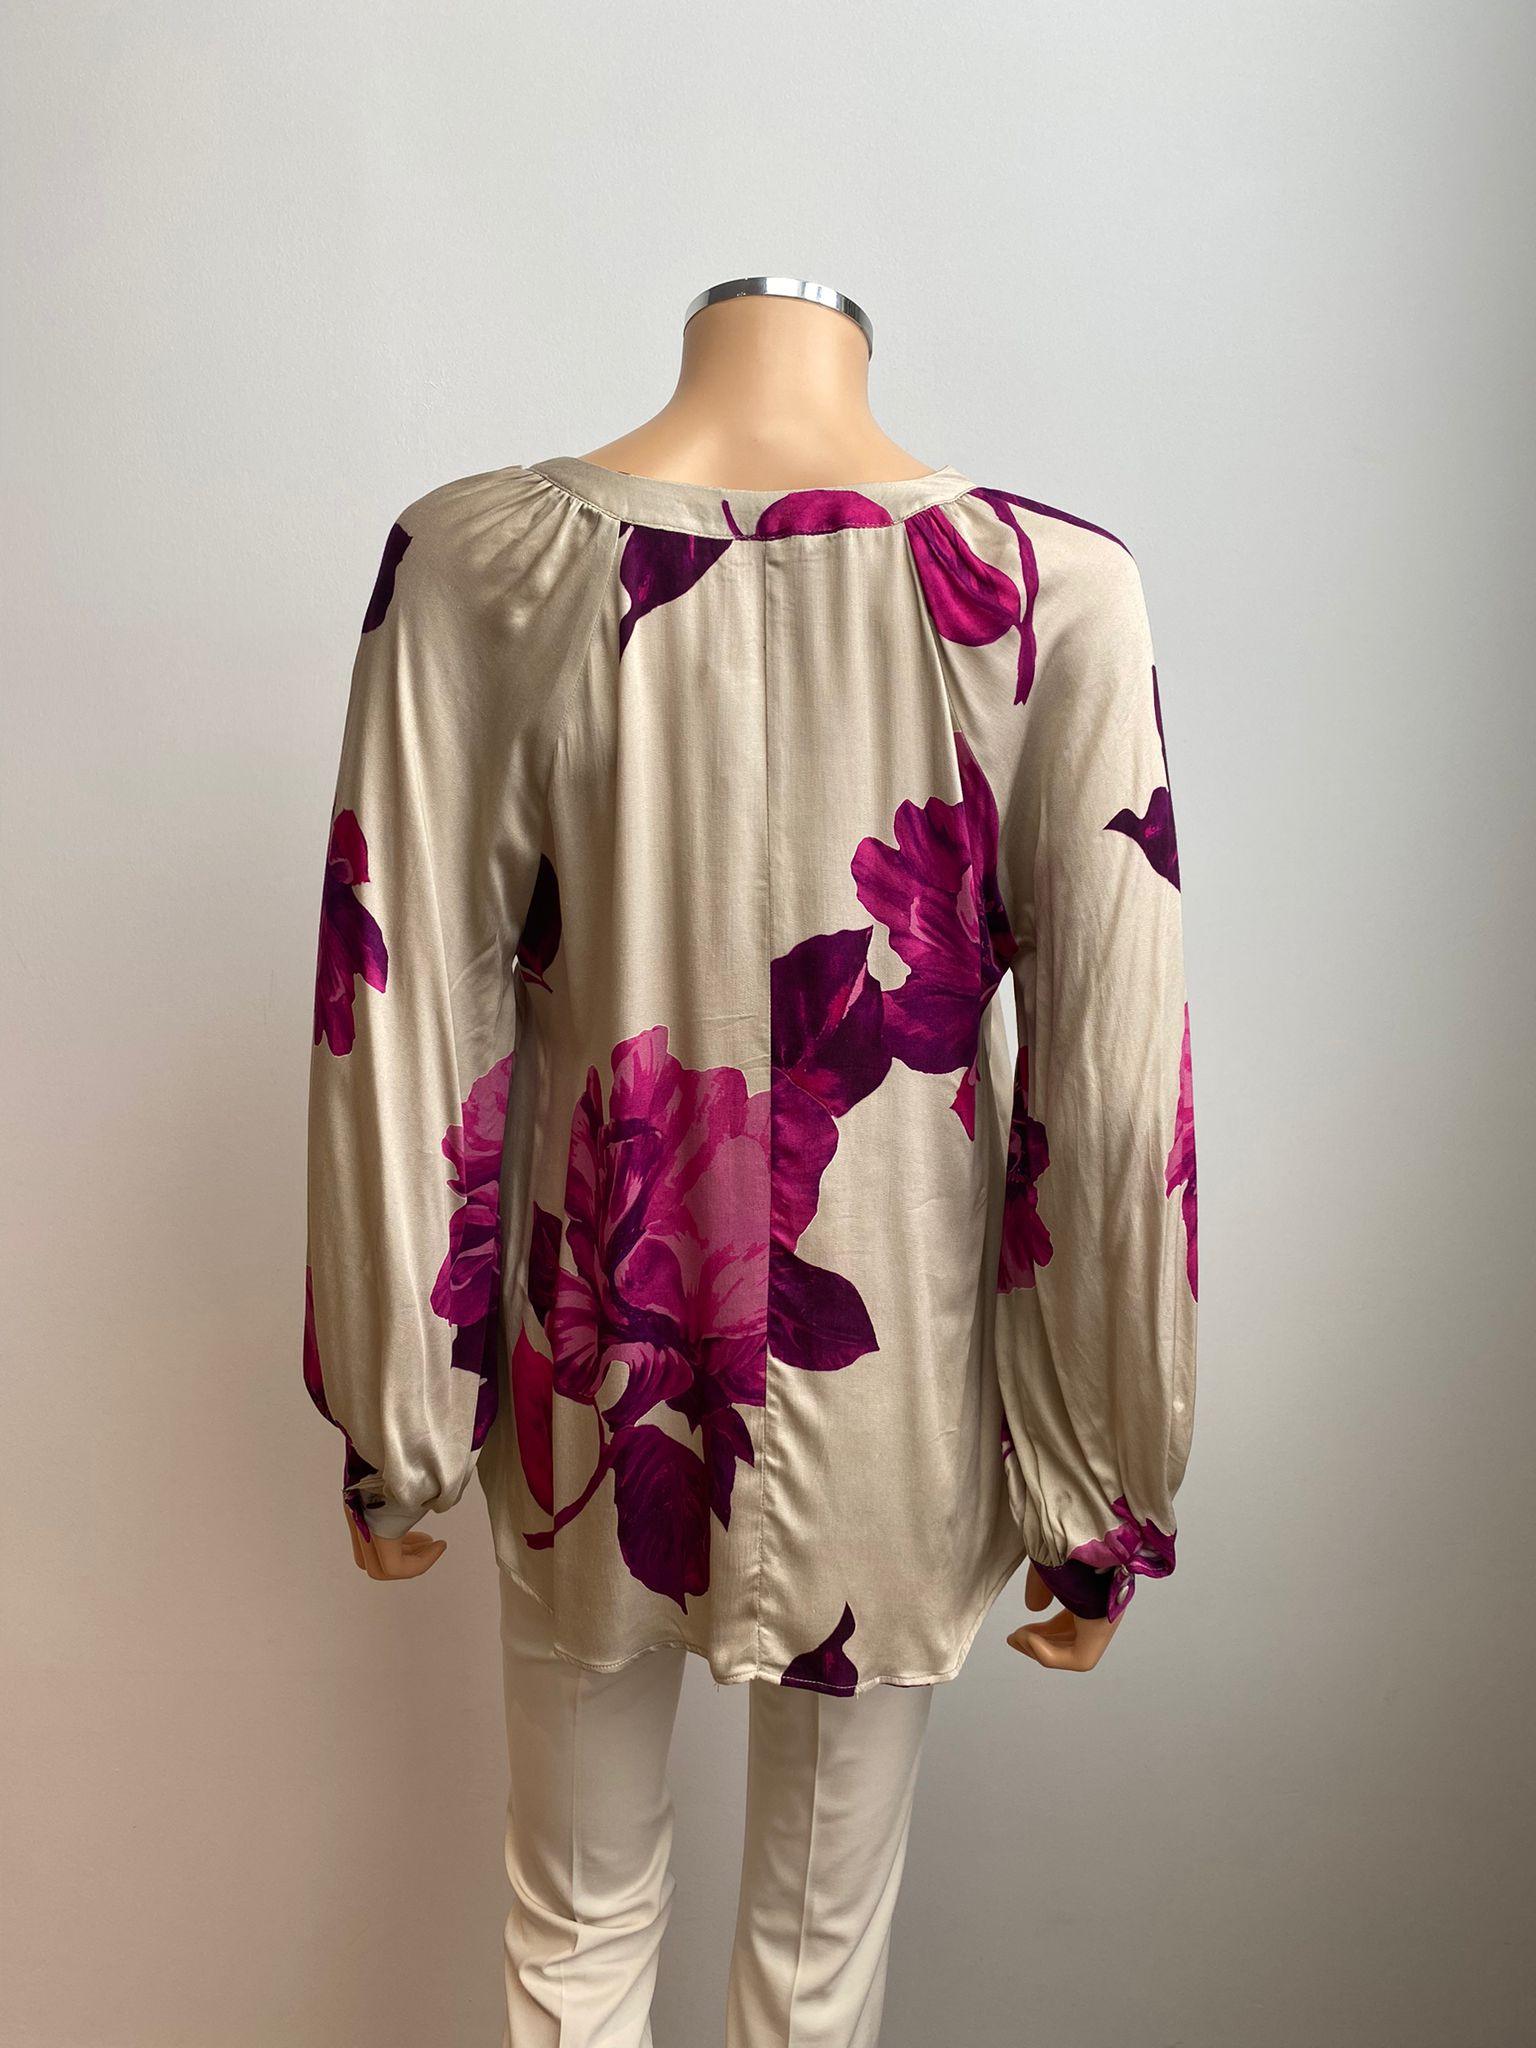 Bloes Fuchia Senso ( 9706 Malti Iris ) - Delaere Womenswear